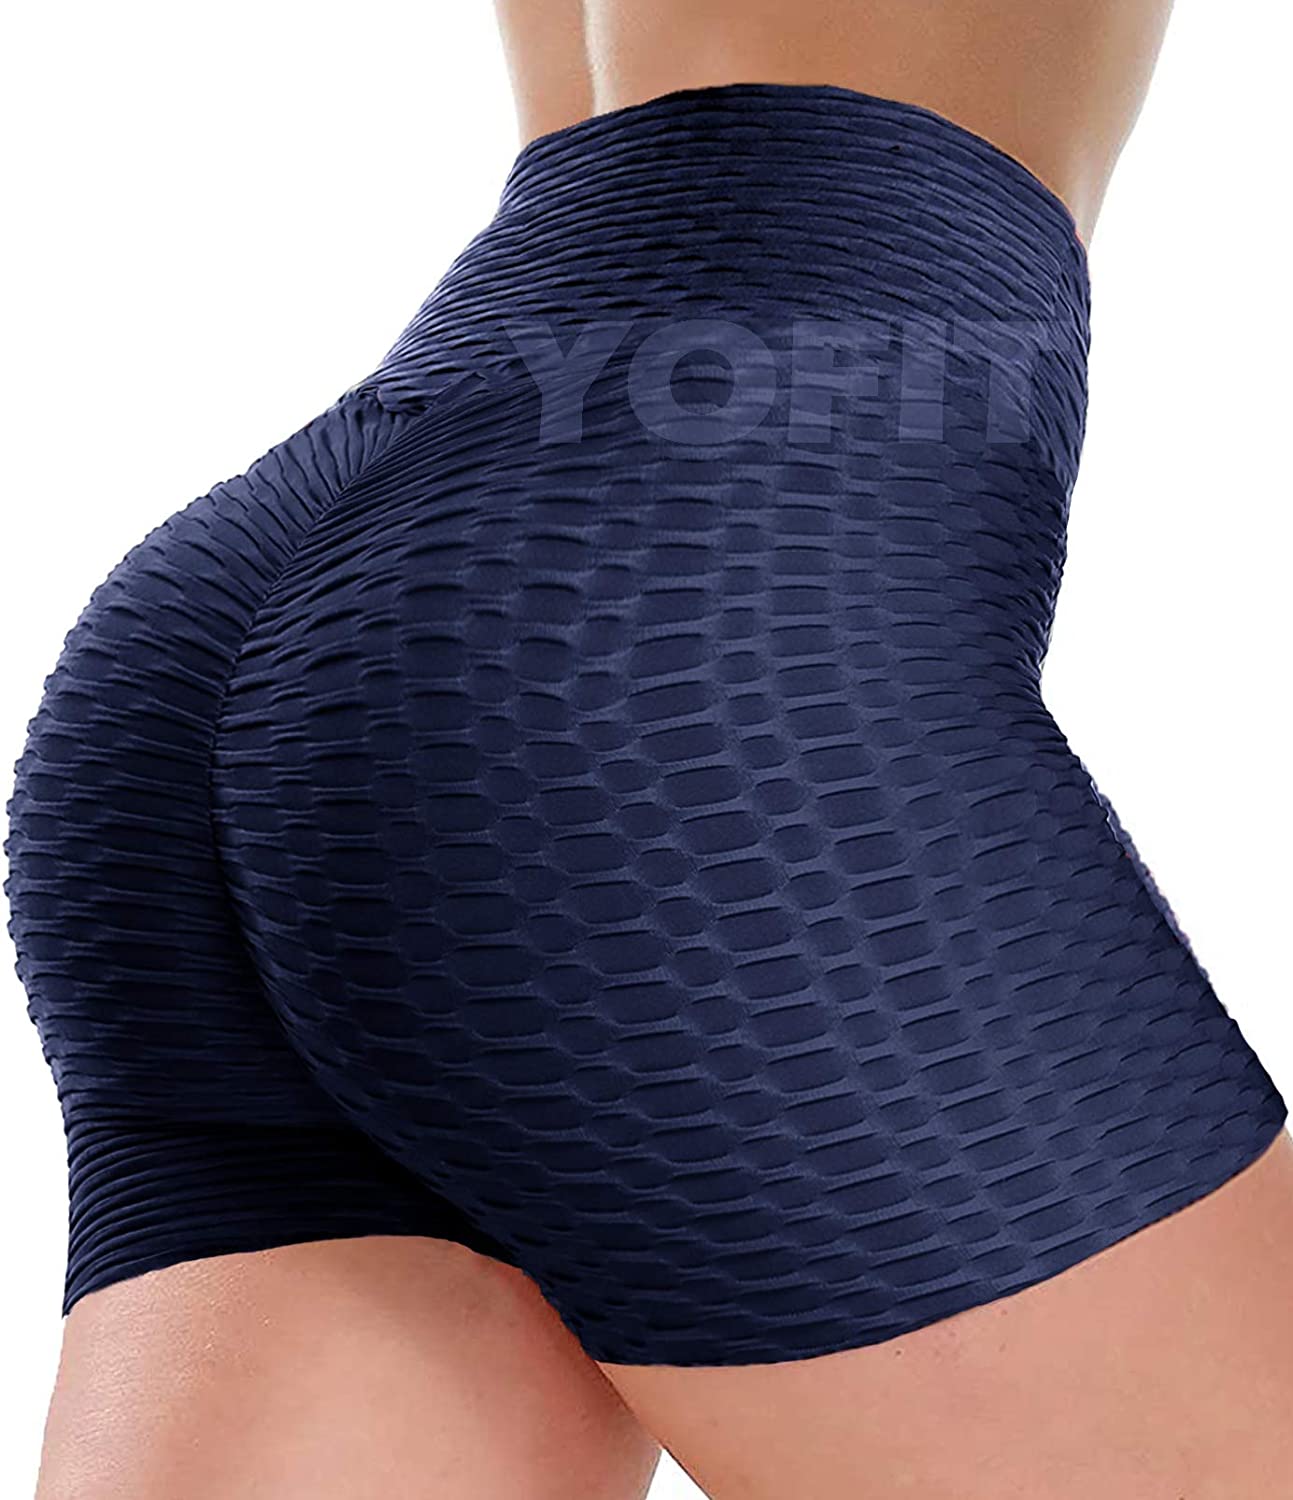 YOFIT Scrunch Butt Lifting Shorts for Women Gym Zambia